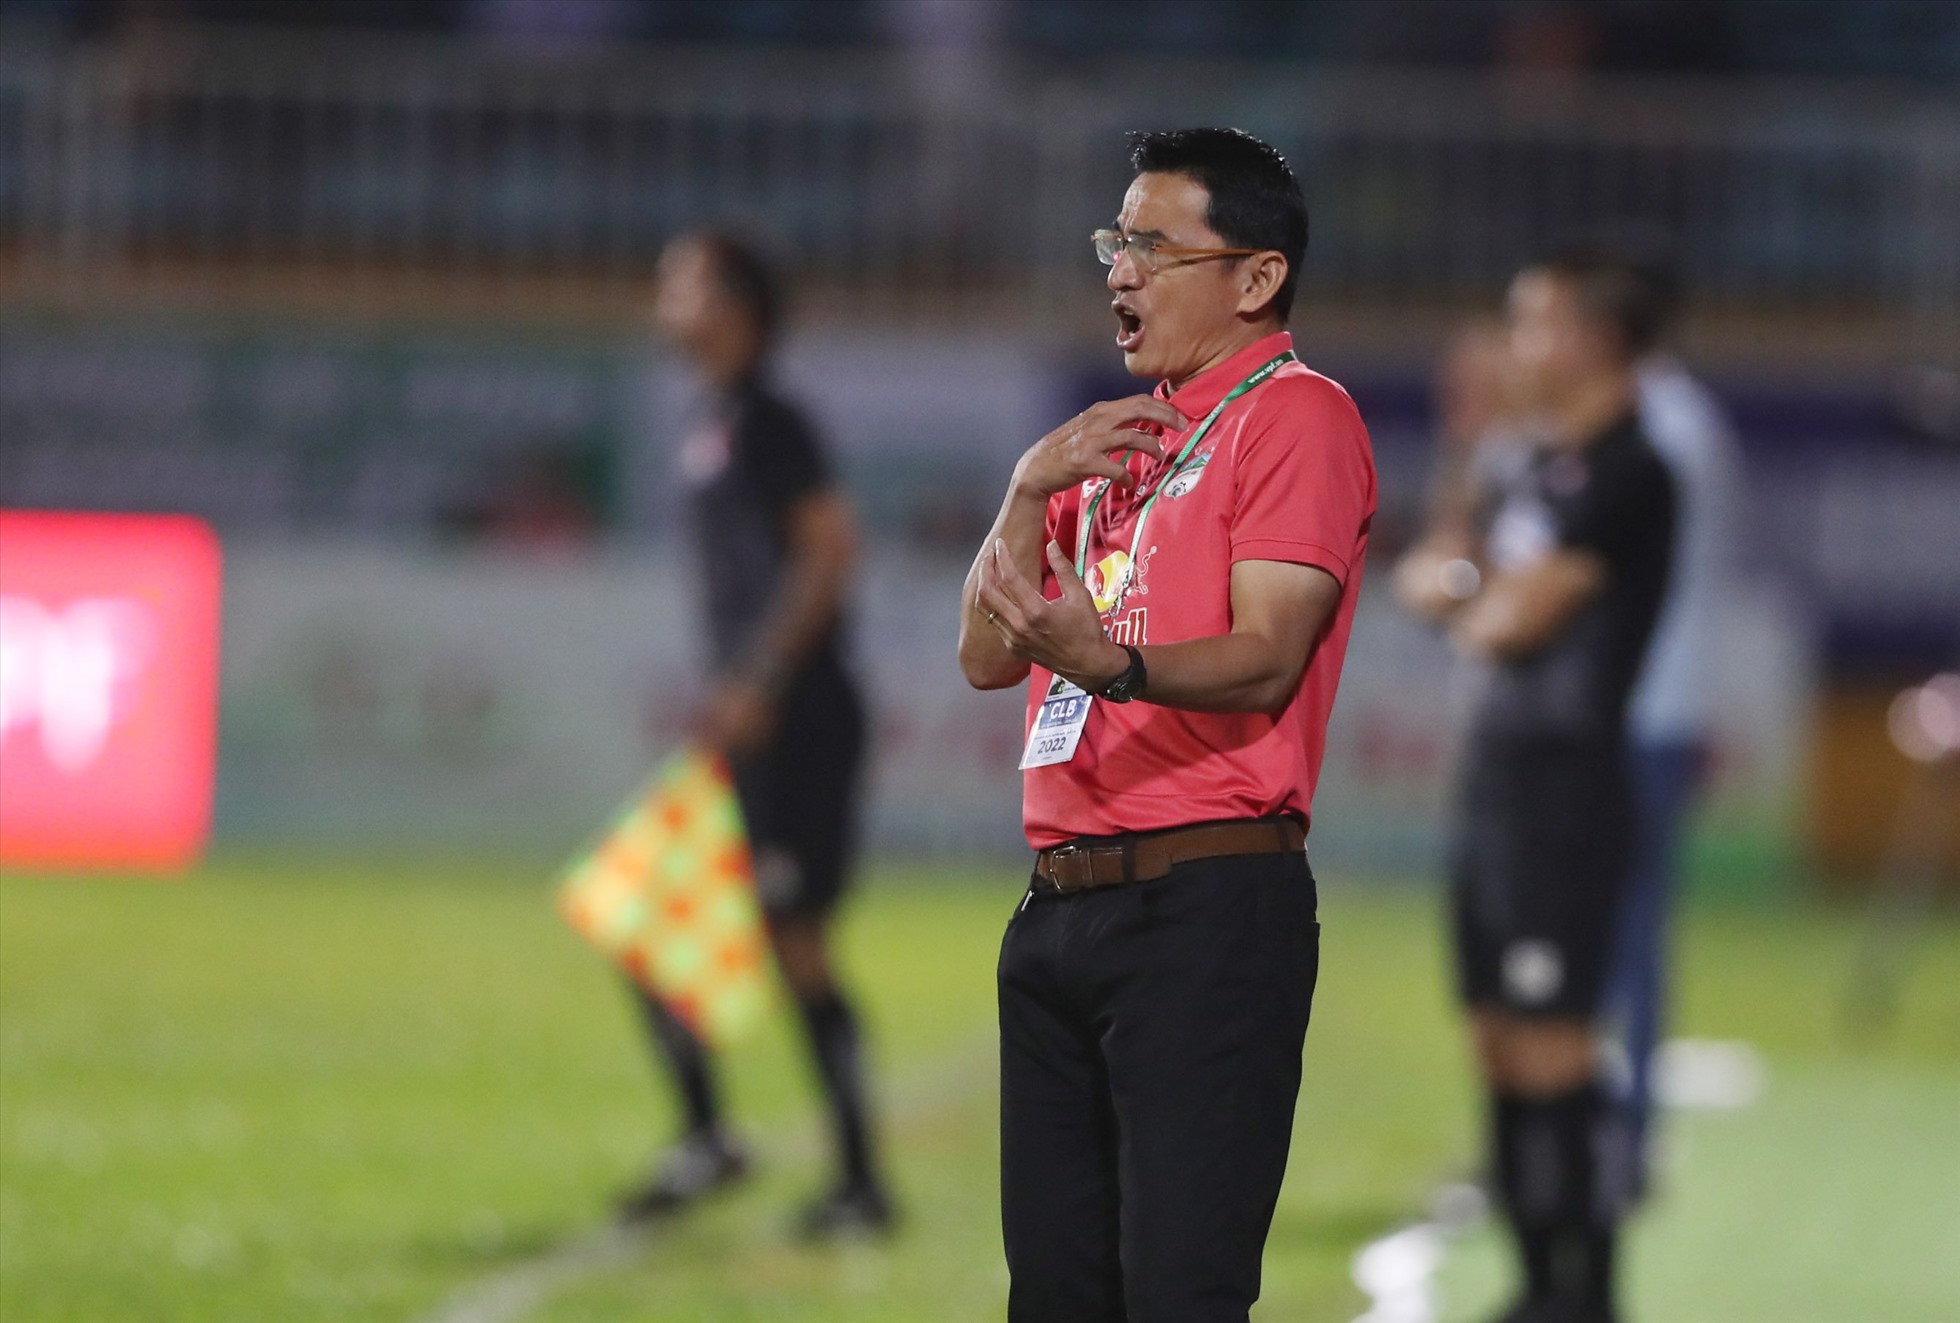 Hoàng Anh Gia Lai của huấn luyện viên Kiatisak chìm sâu vào khủng hoảng khi có trận  thứ 5 liên tiếp không thắng. Đây cũng là lần thứ 2 liên tiếp, huấn luyện viên Kiatisak thất bại trước ông Vũ Tiến Thành. Ở V.League 2021, Hoàng Anh Gia Lai chỉ nhận duy nhất một thất bại trước Sài Gòn FC của ông Thành dẫn dắt trước khi bay cao trên bảng xếp hạng và giành chức vô địch lượt đi.